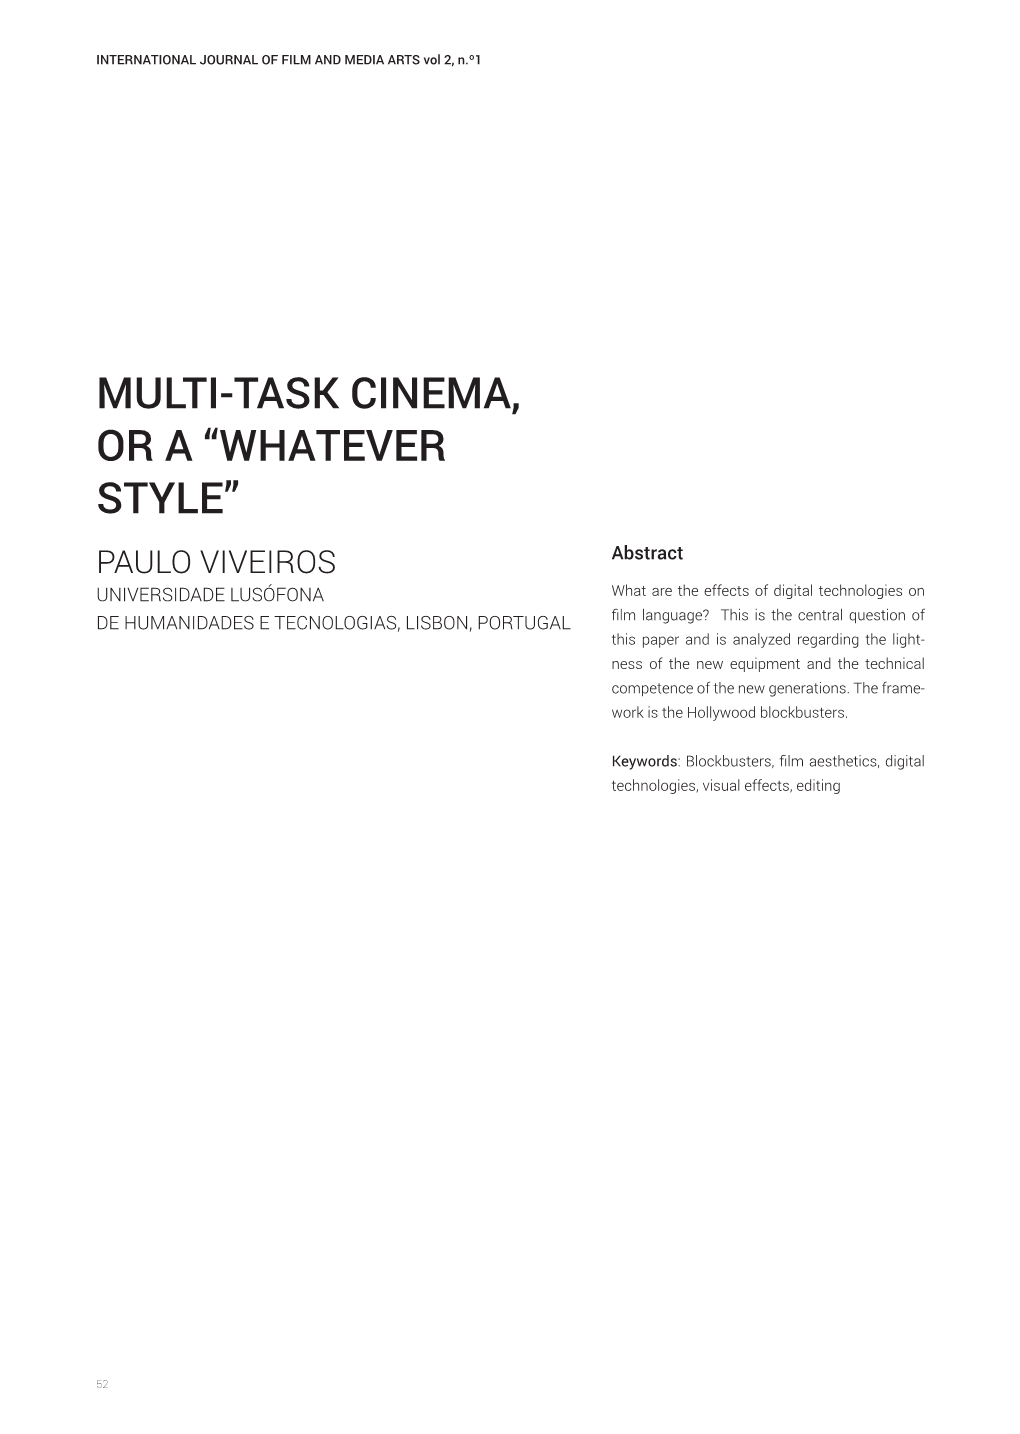 Multi-Task Cinema, Or A